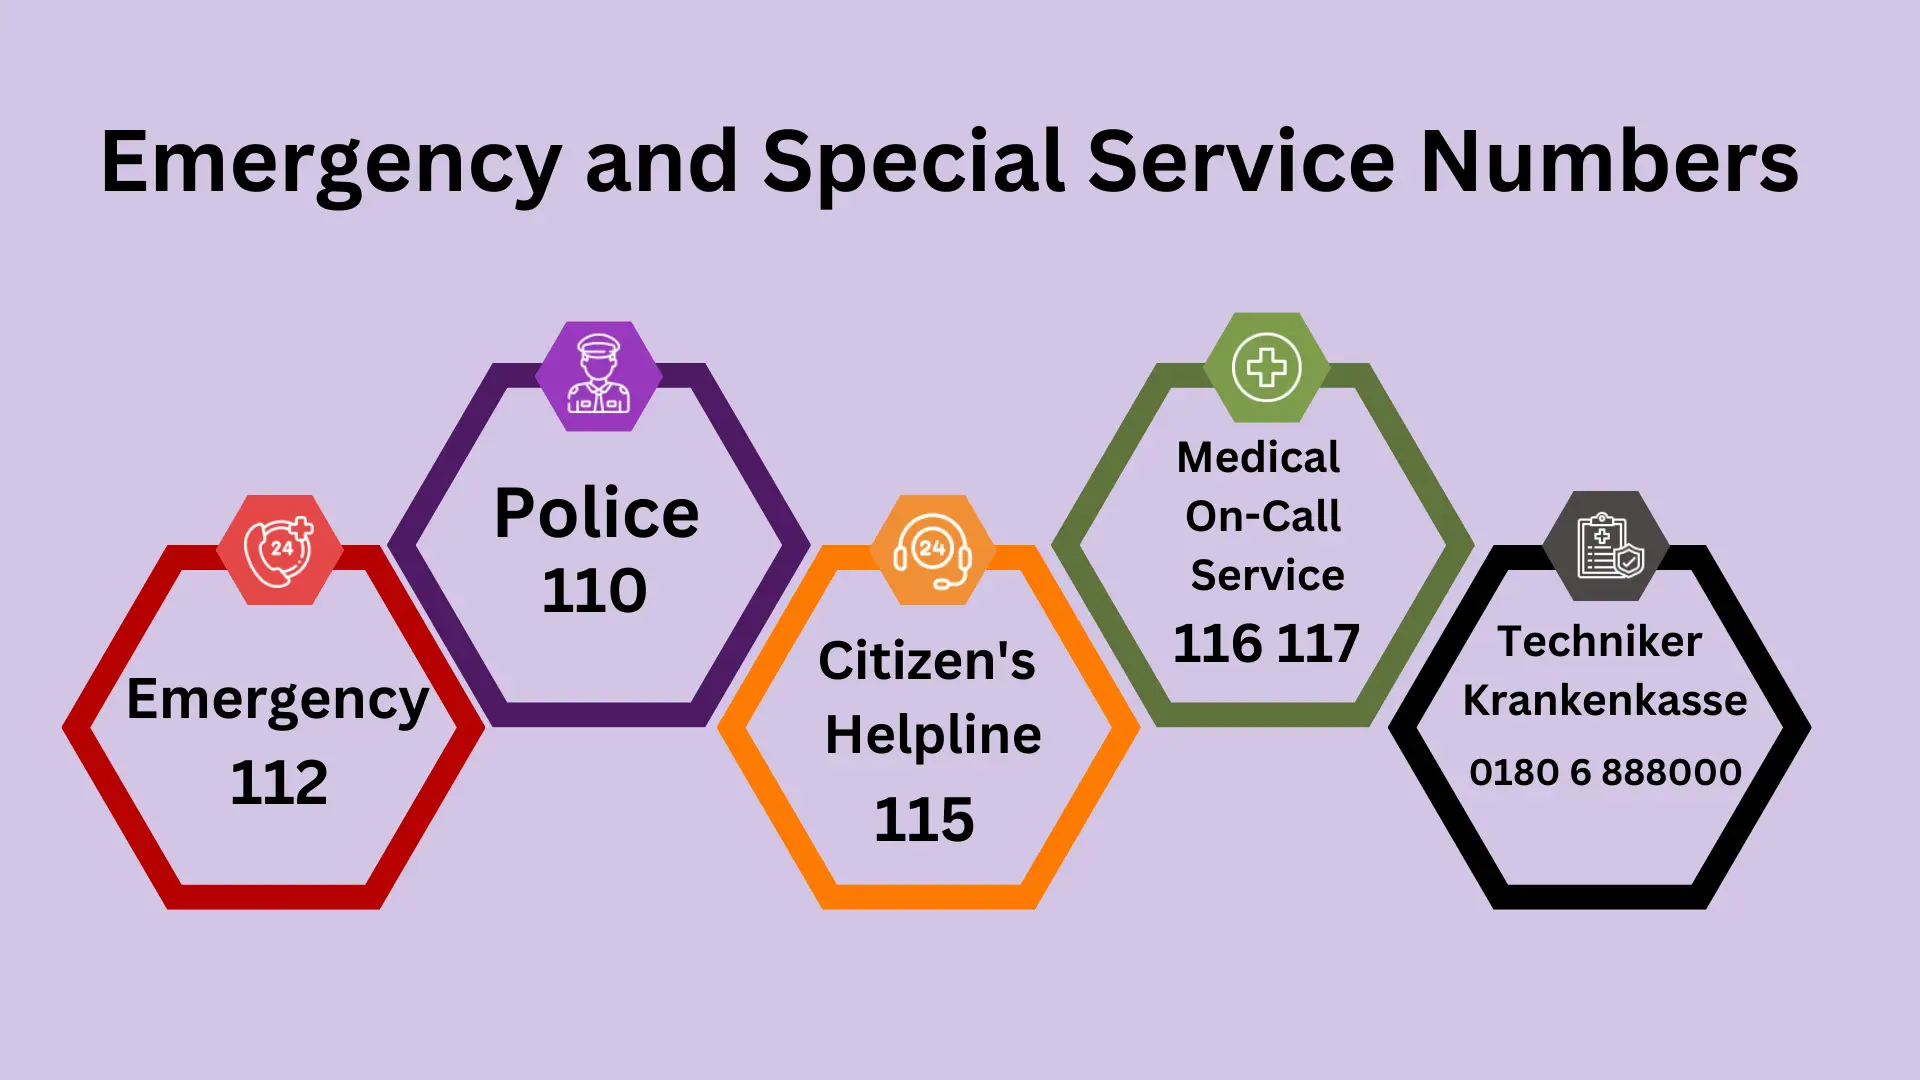 Numéros d'urgence et de services spéciaux